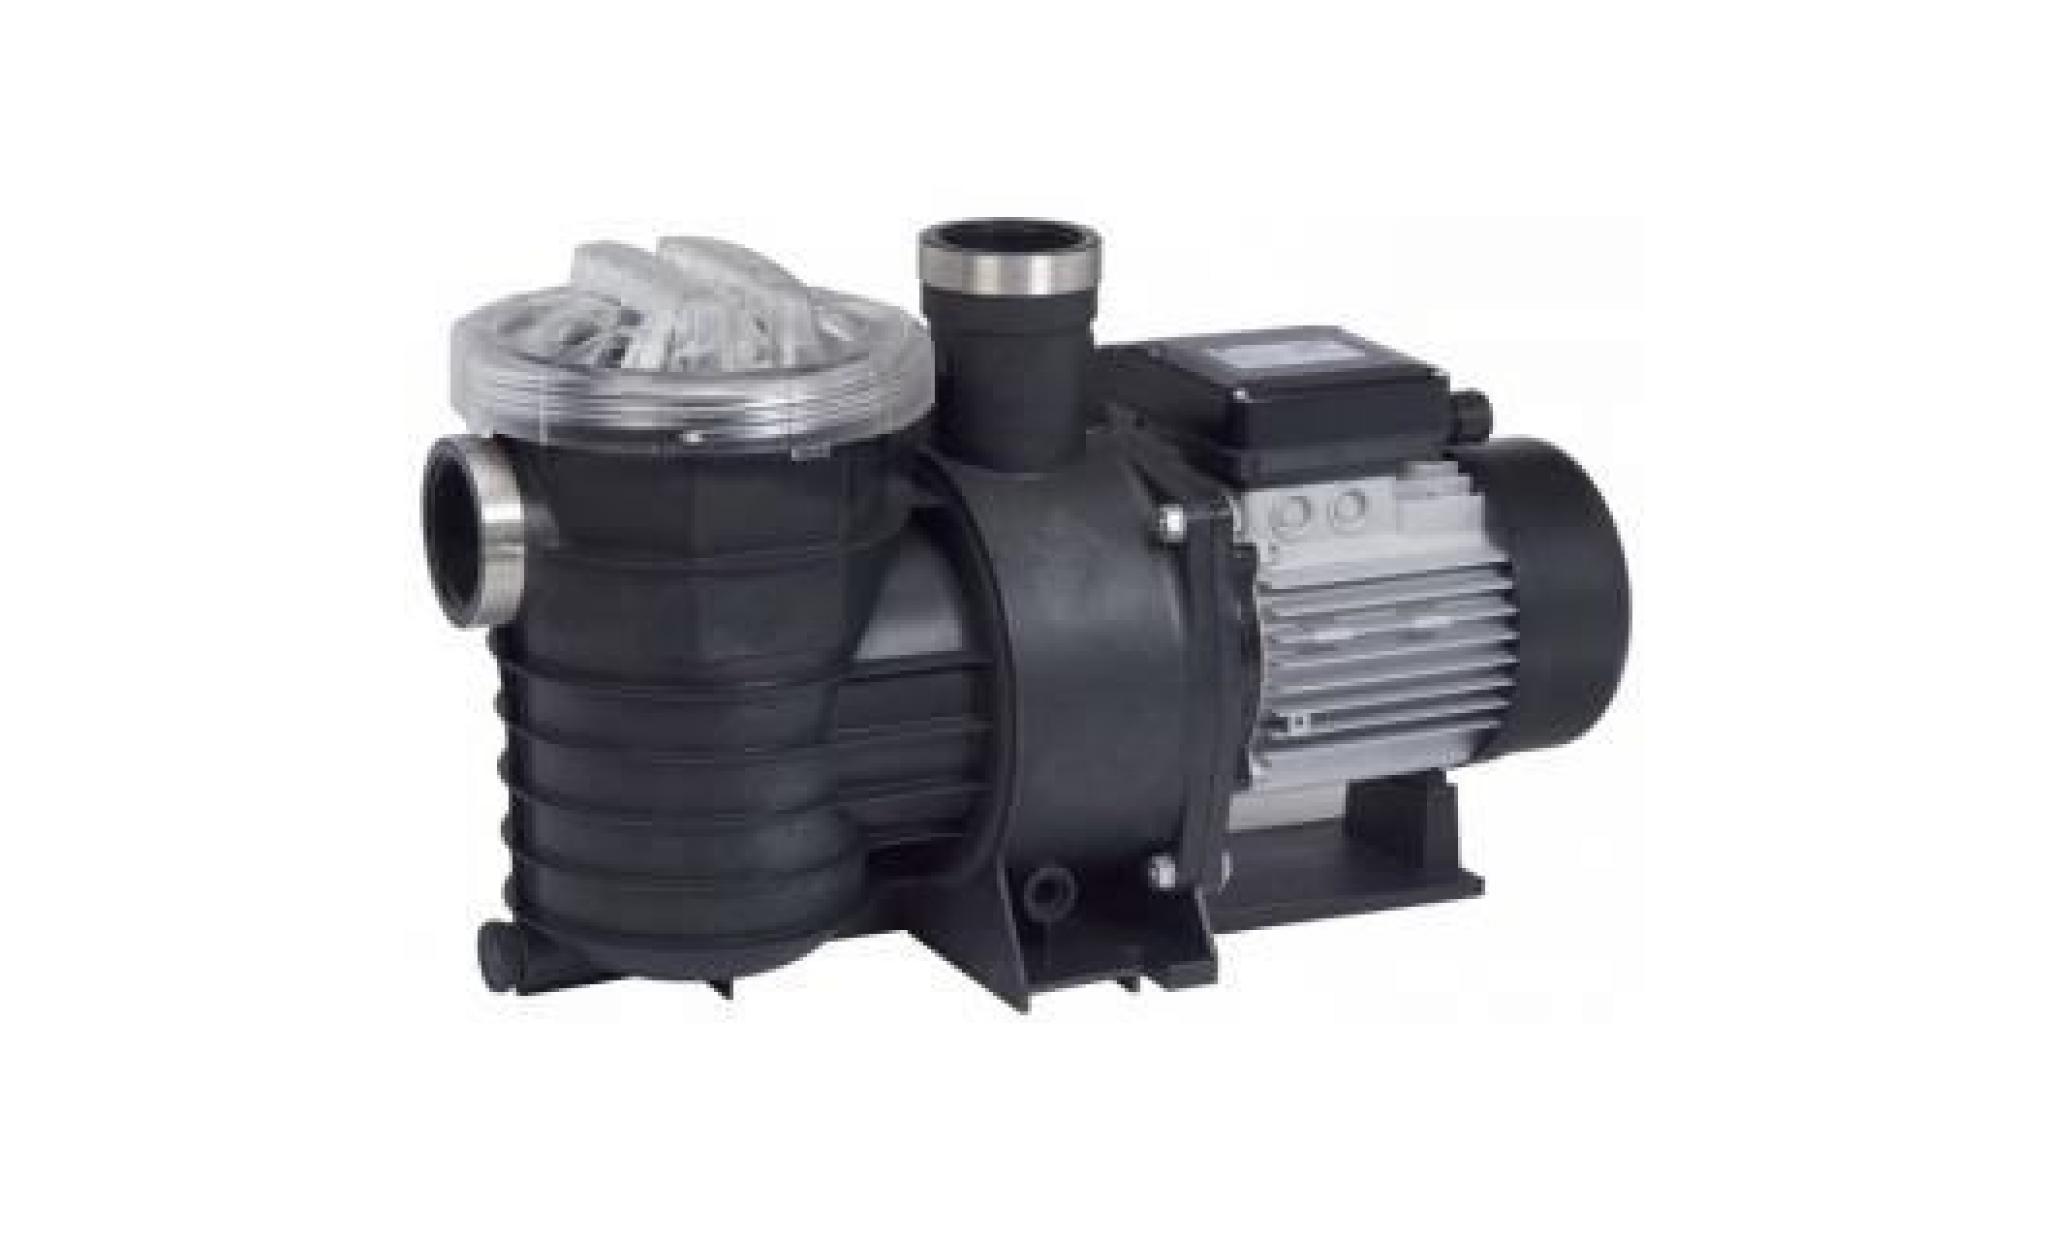 pompe filtration piscine ksb filtra n 14 m3/h tri